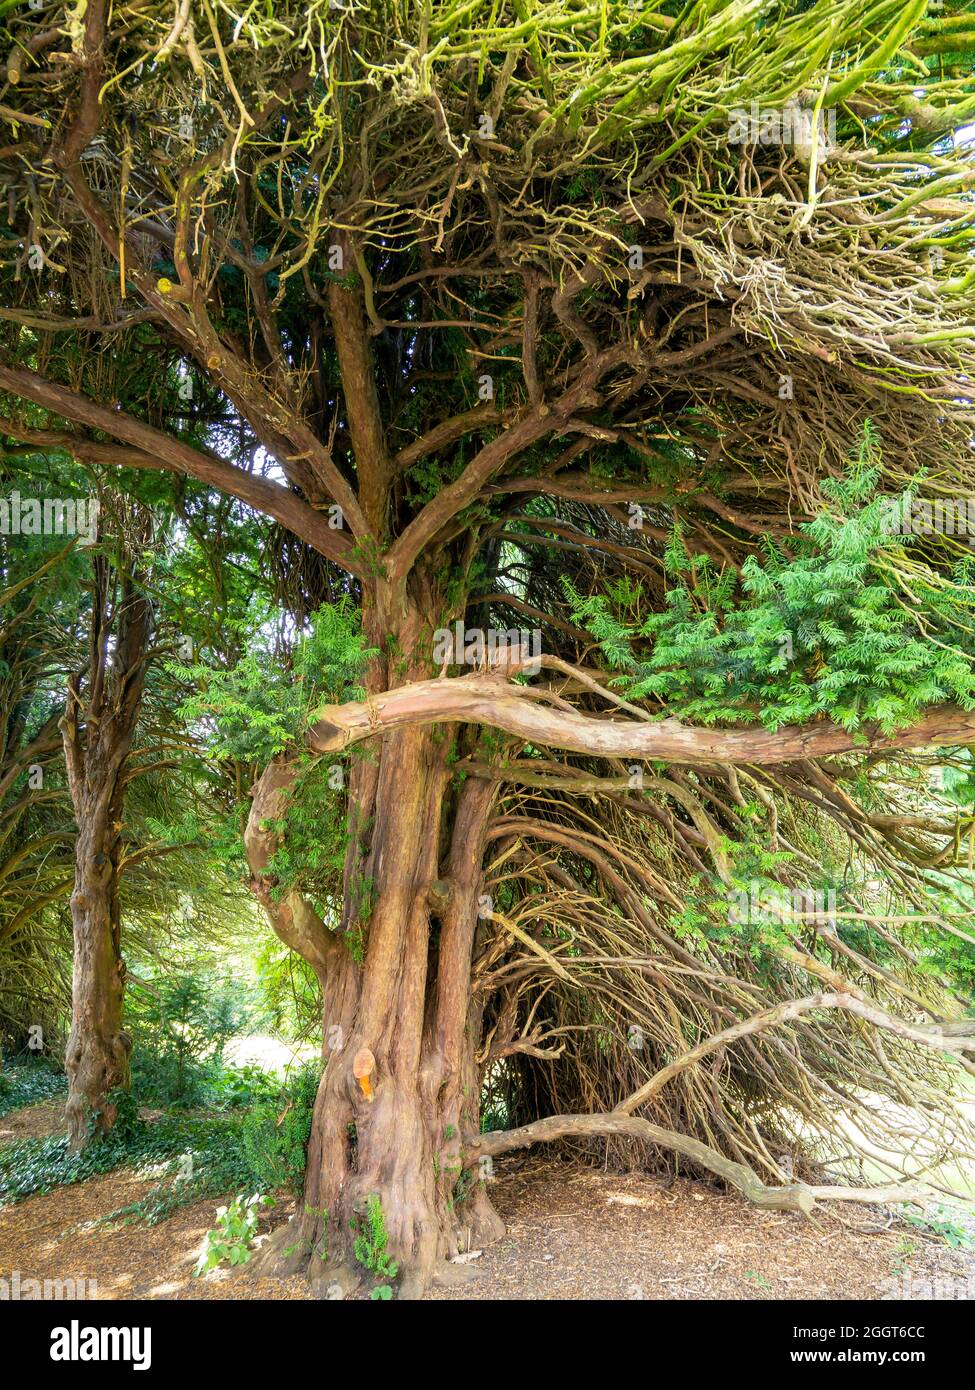 Antico albero di tasso con rami attorcigliati e foglie verdi Foto Stock